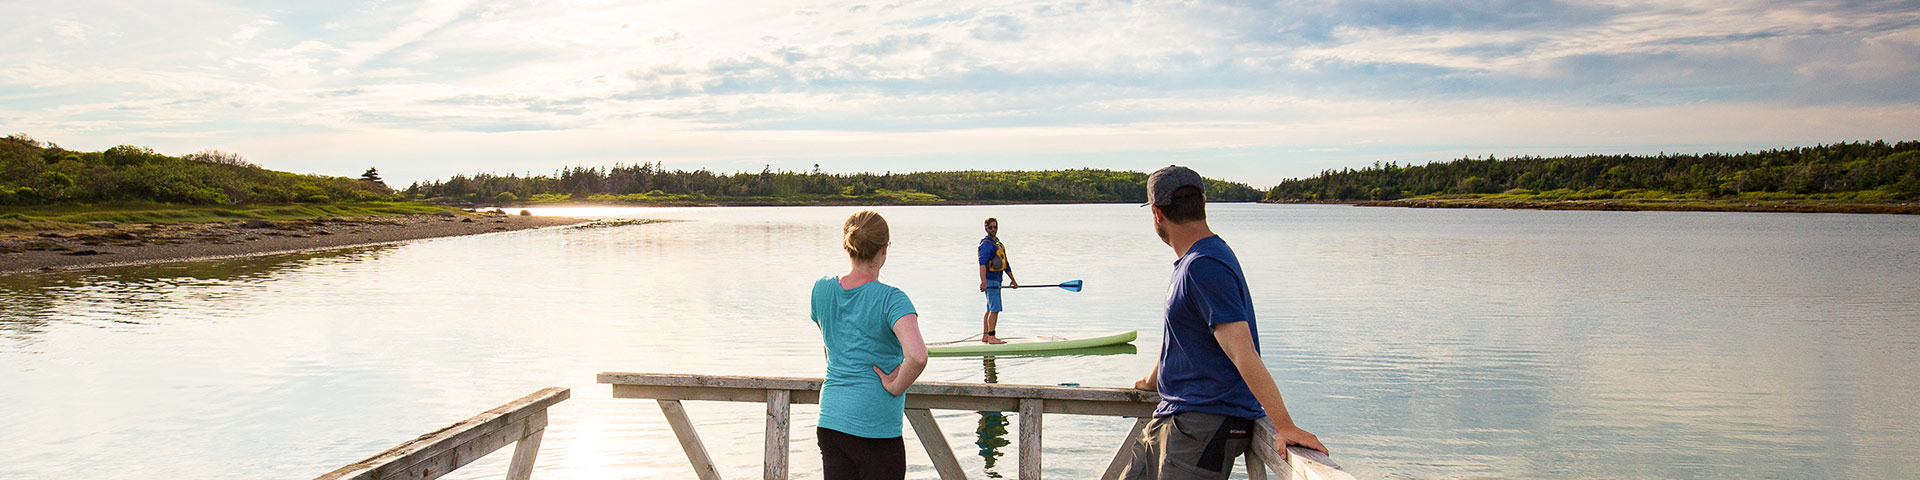 Deux personnes sont debout sur un quai et regardent quelqu'un faire du paddle board pendant que le soleil se couche.